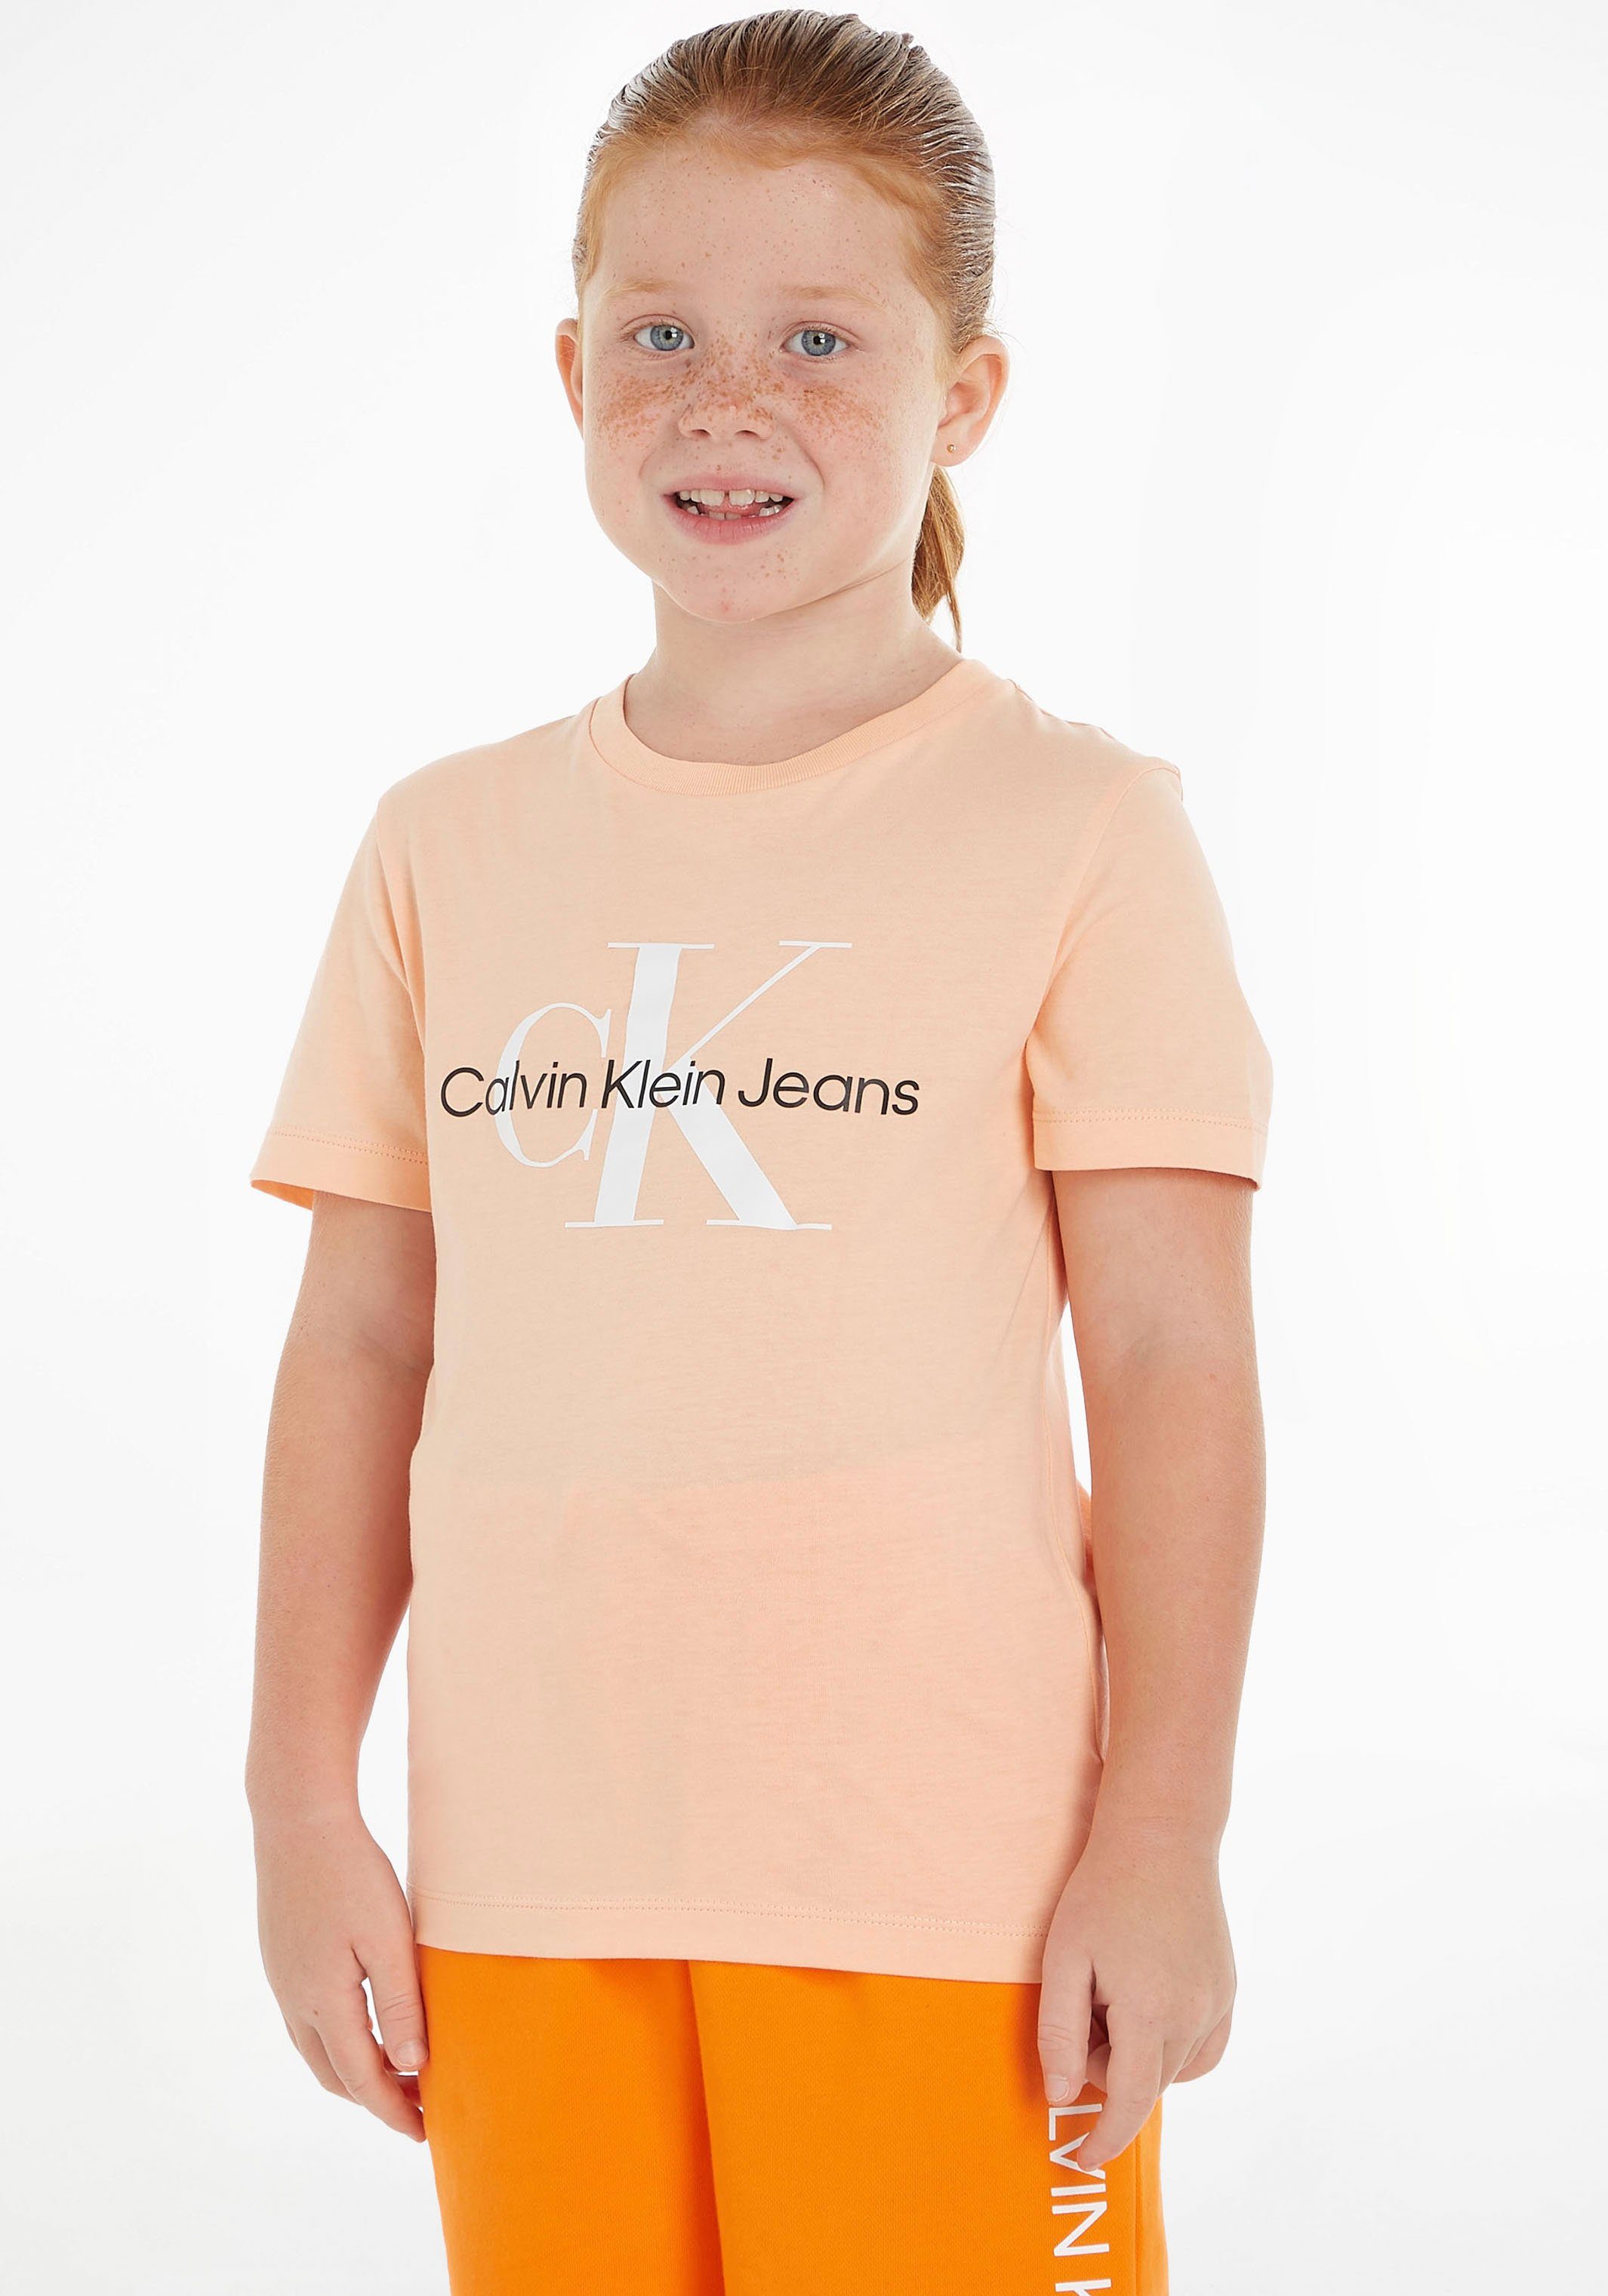 Kinder Calvin Jungen MiniMe,für T-Shirt MONOGRAM T-SHIRT LOGO hellorange Klein Junior und Mädchen Kids Jeans